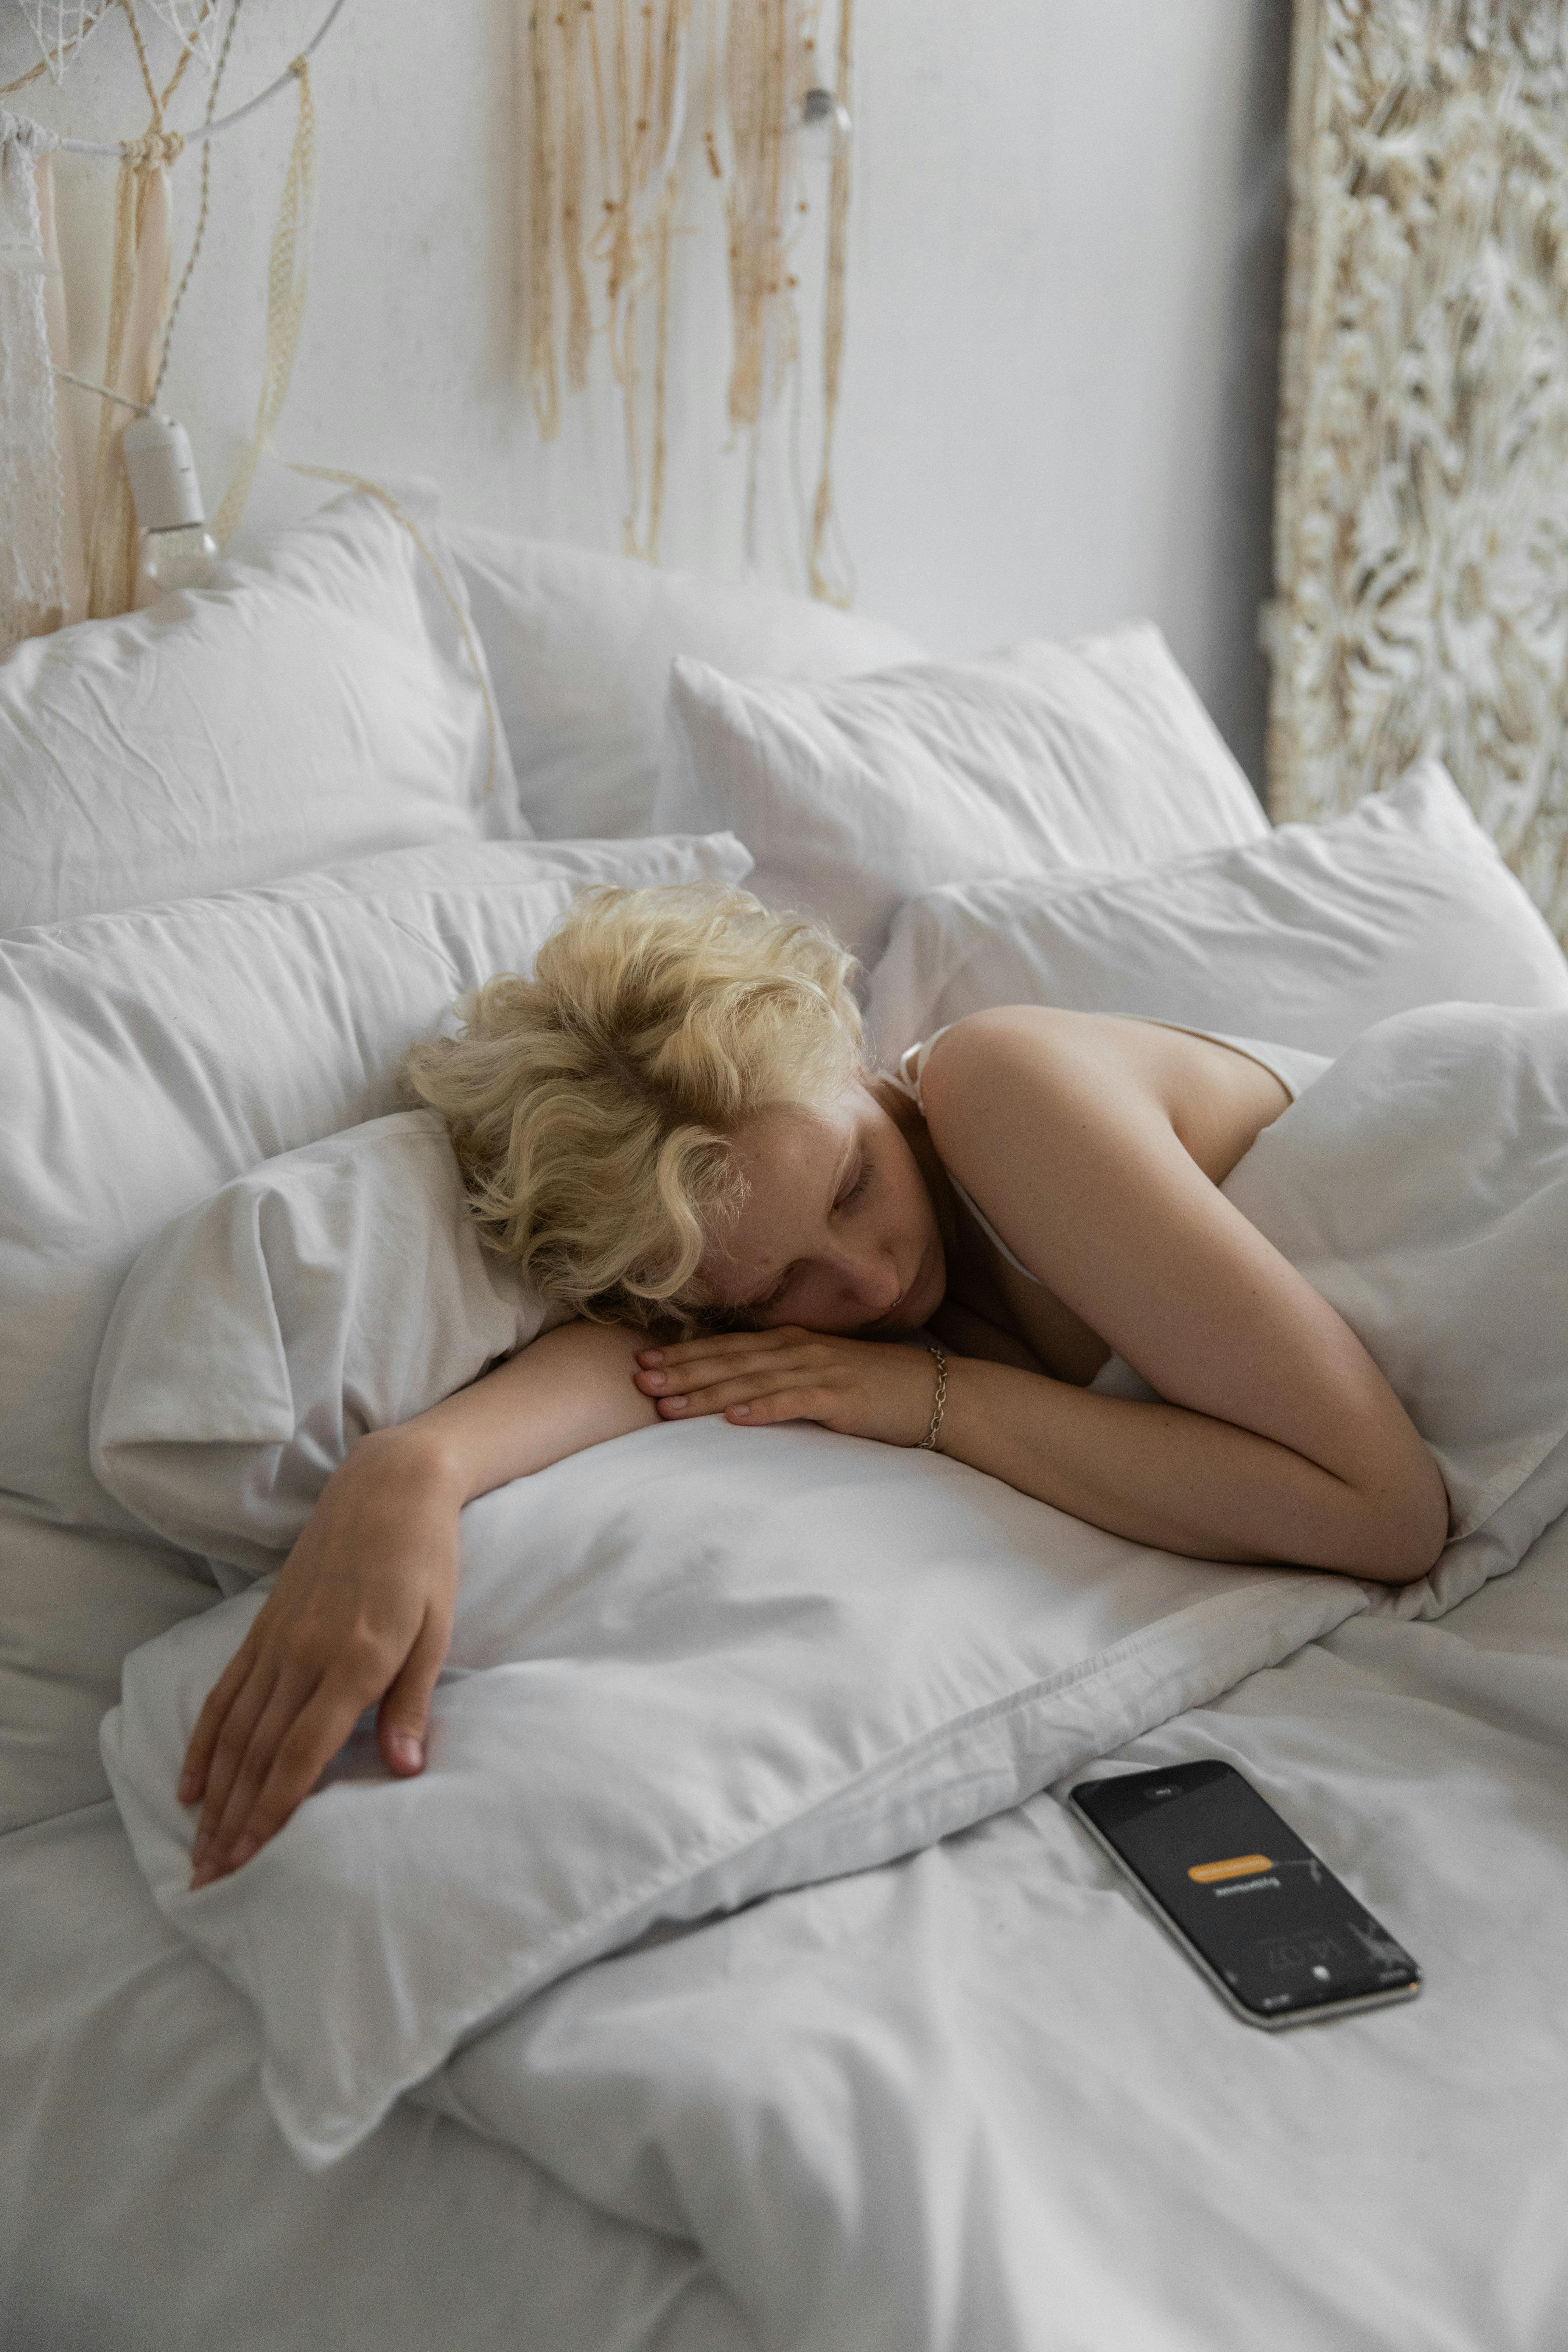 Une femme au lit avec son téléphone sans surveillance | Source : Pexels